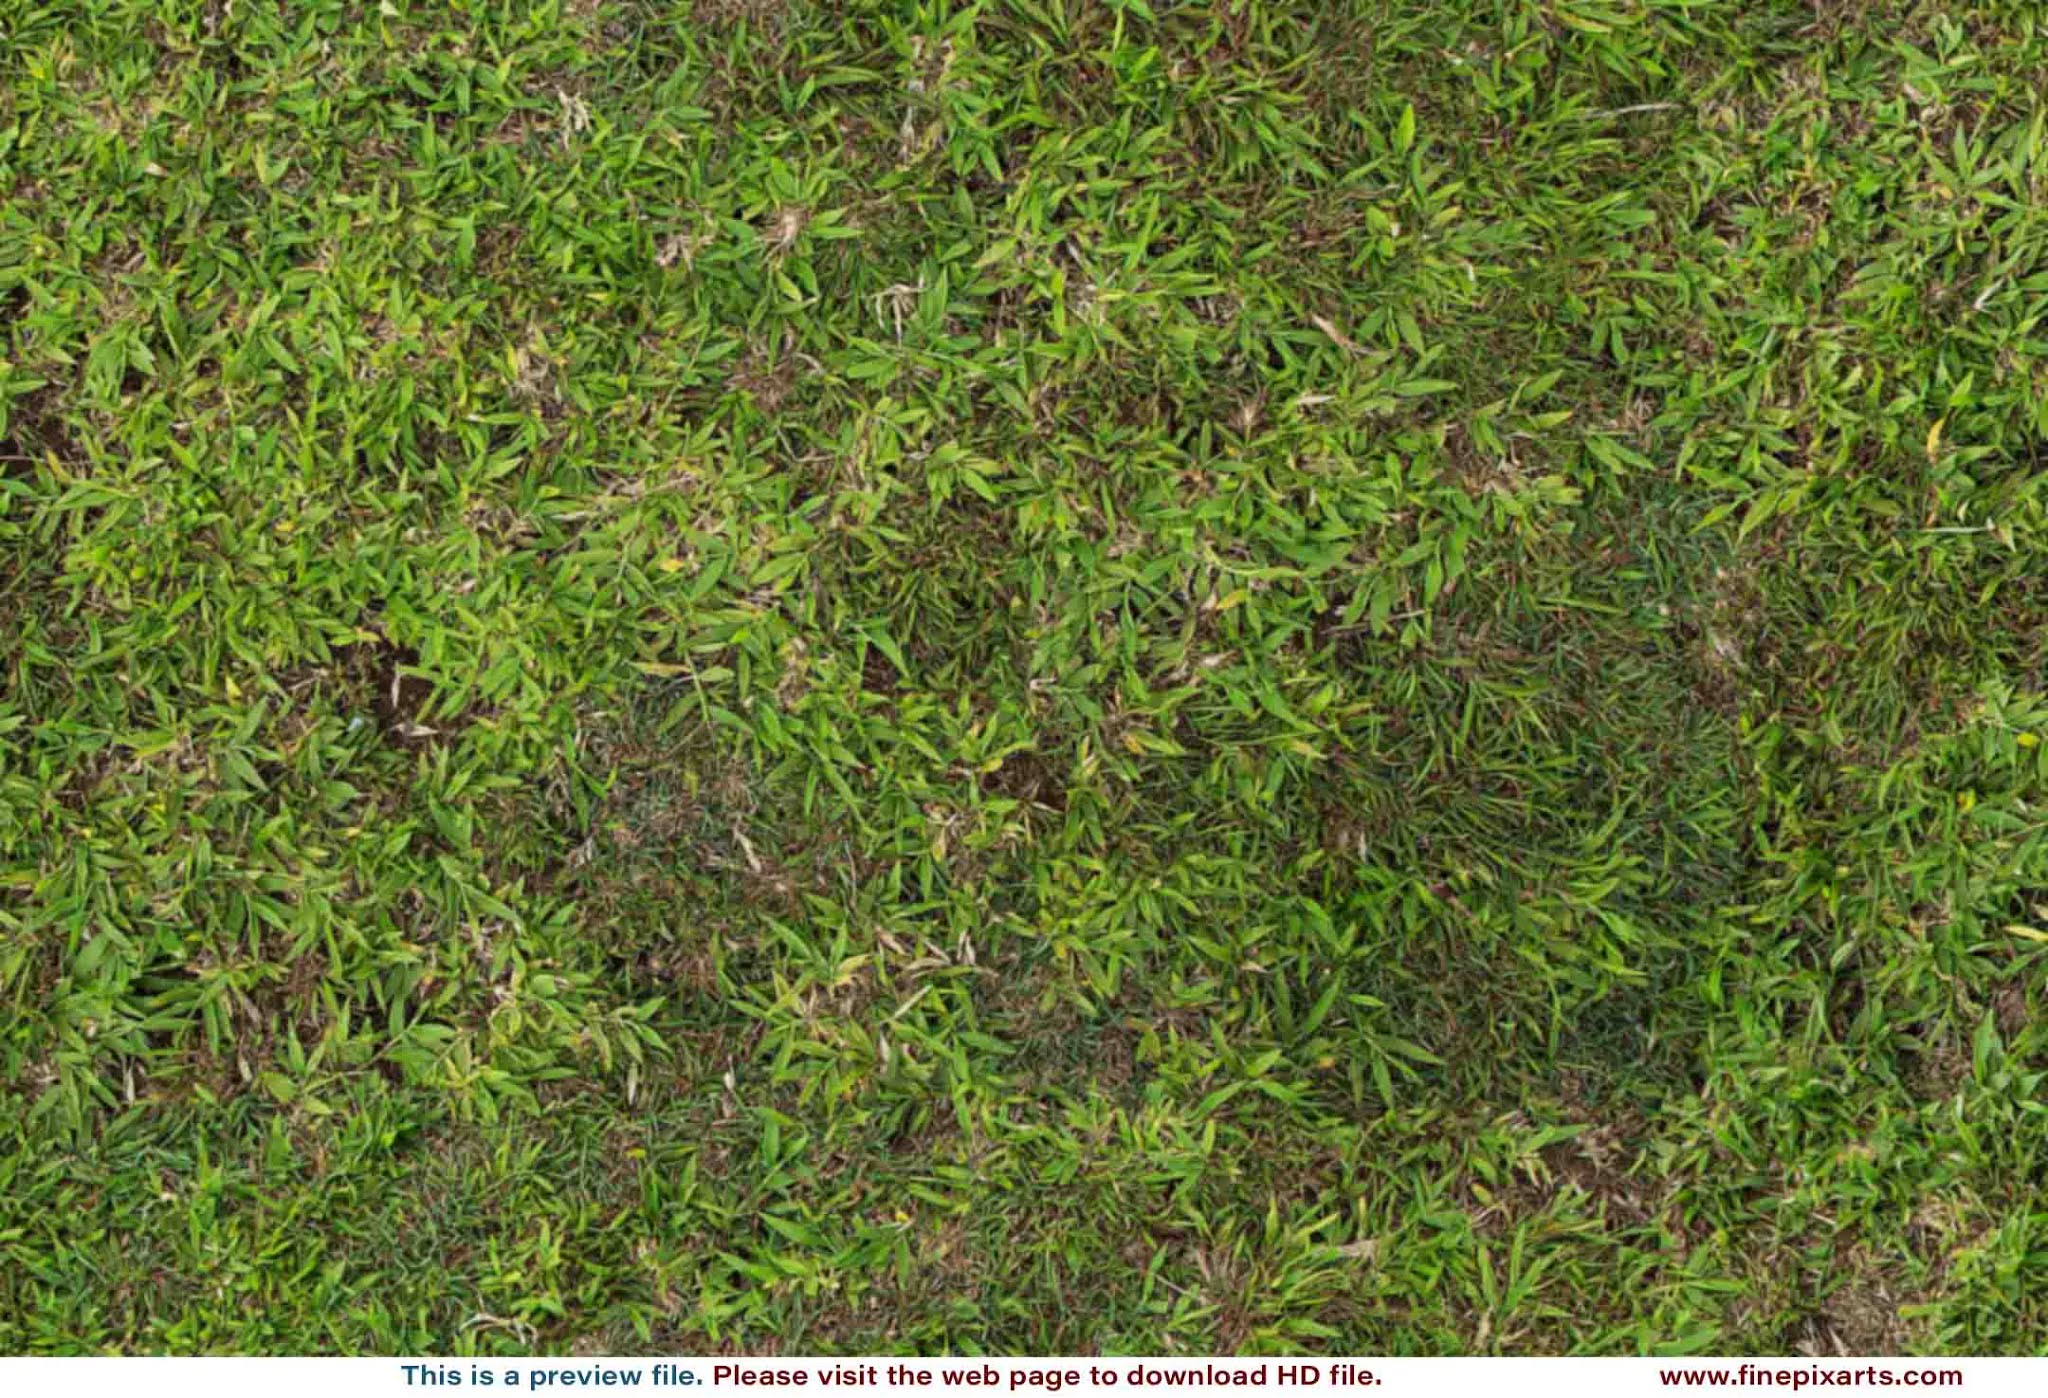 Grass texture 00002